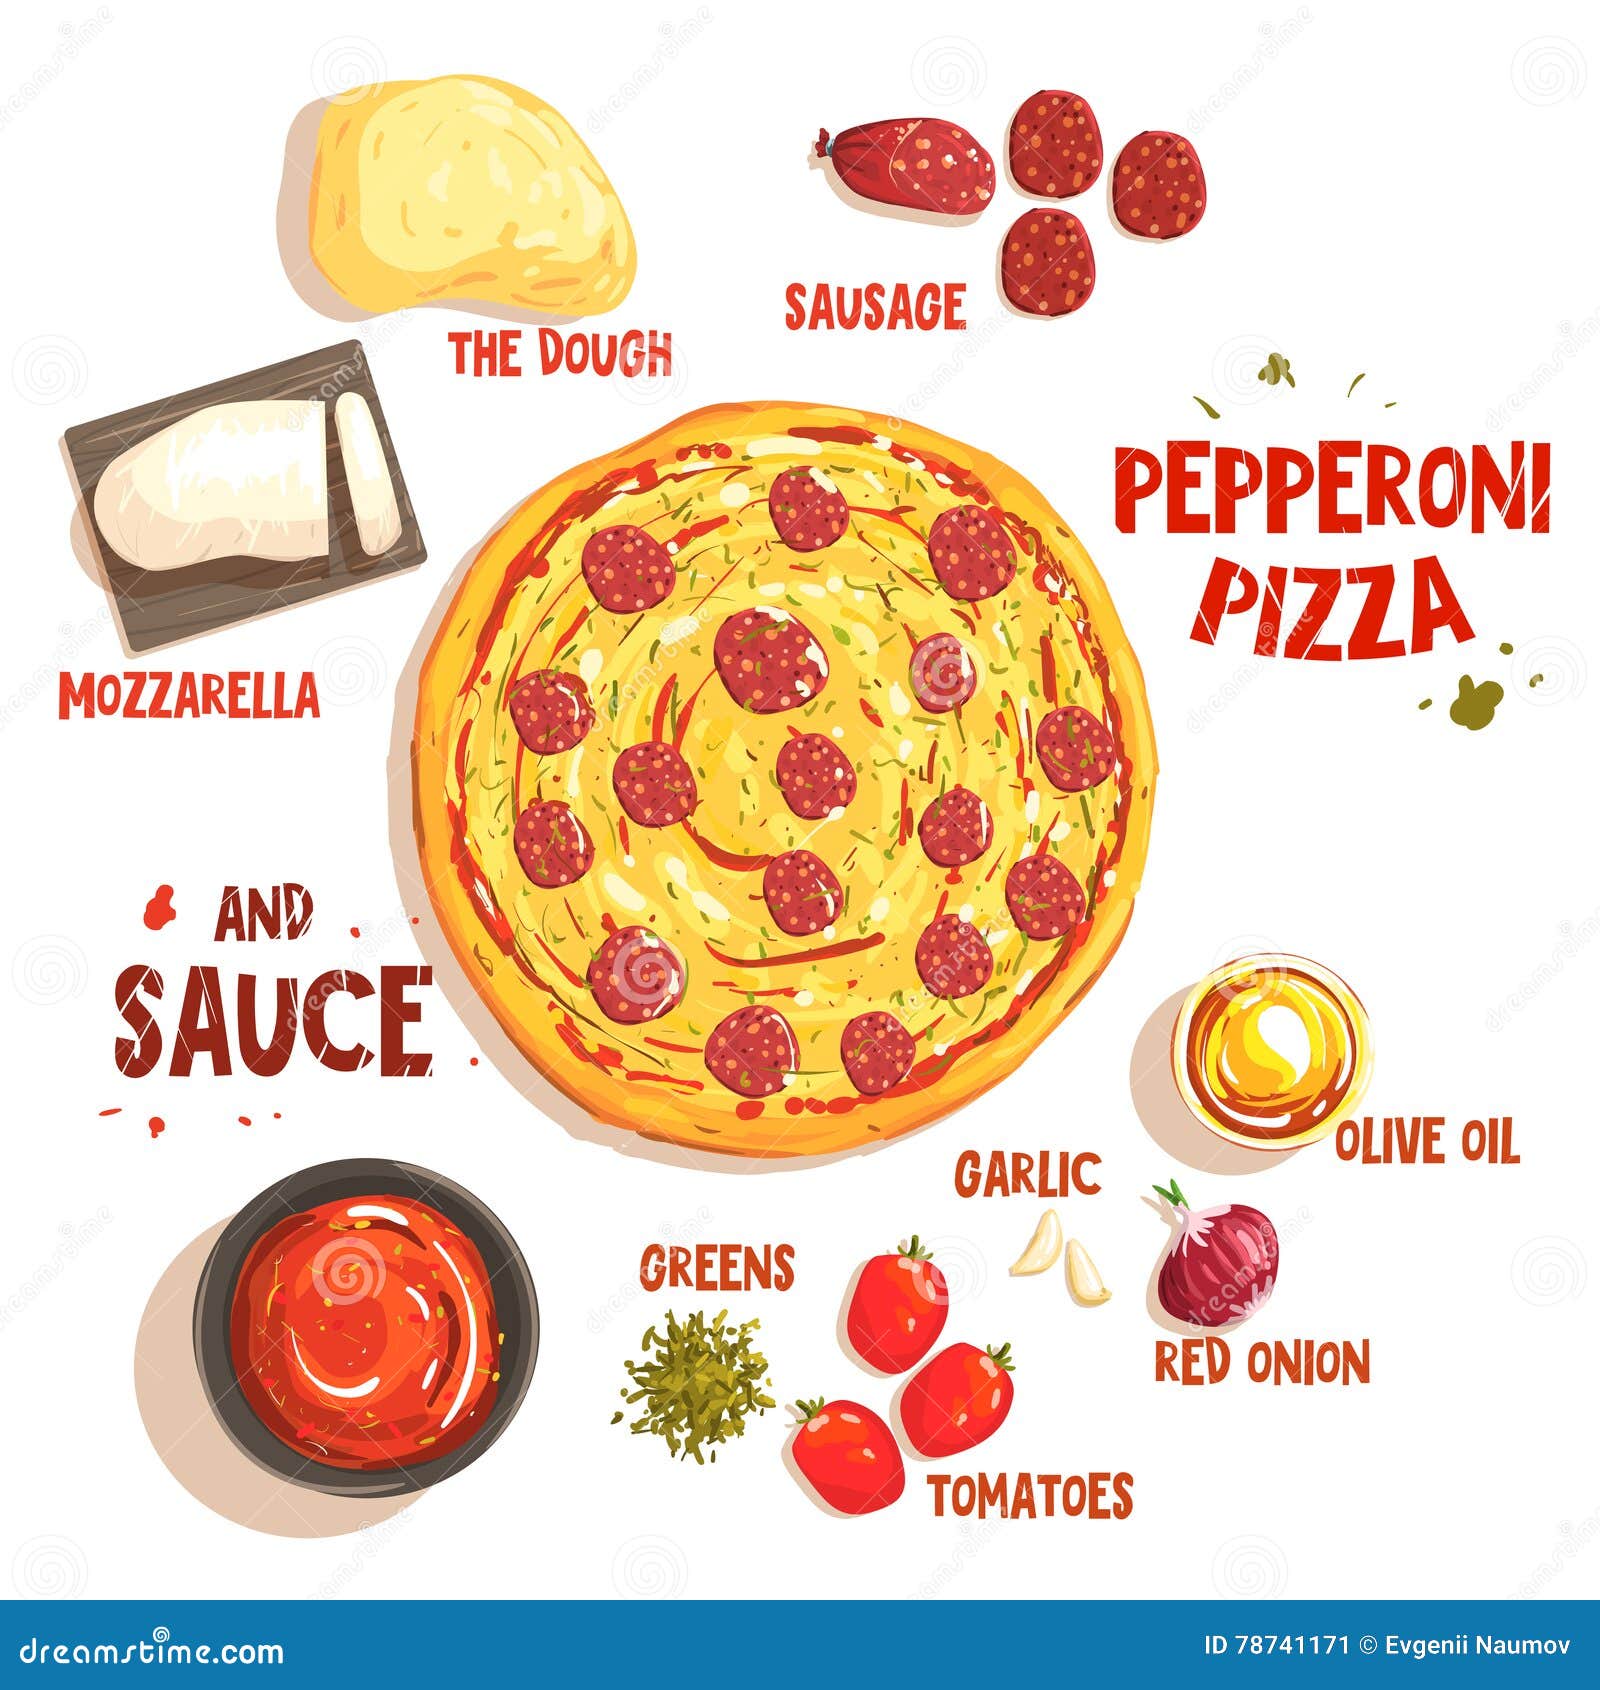 технологическая карта для пиццы пепперони фото 93